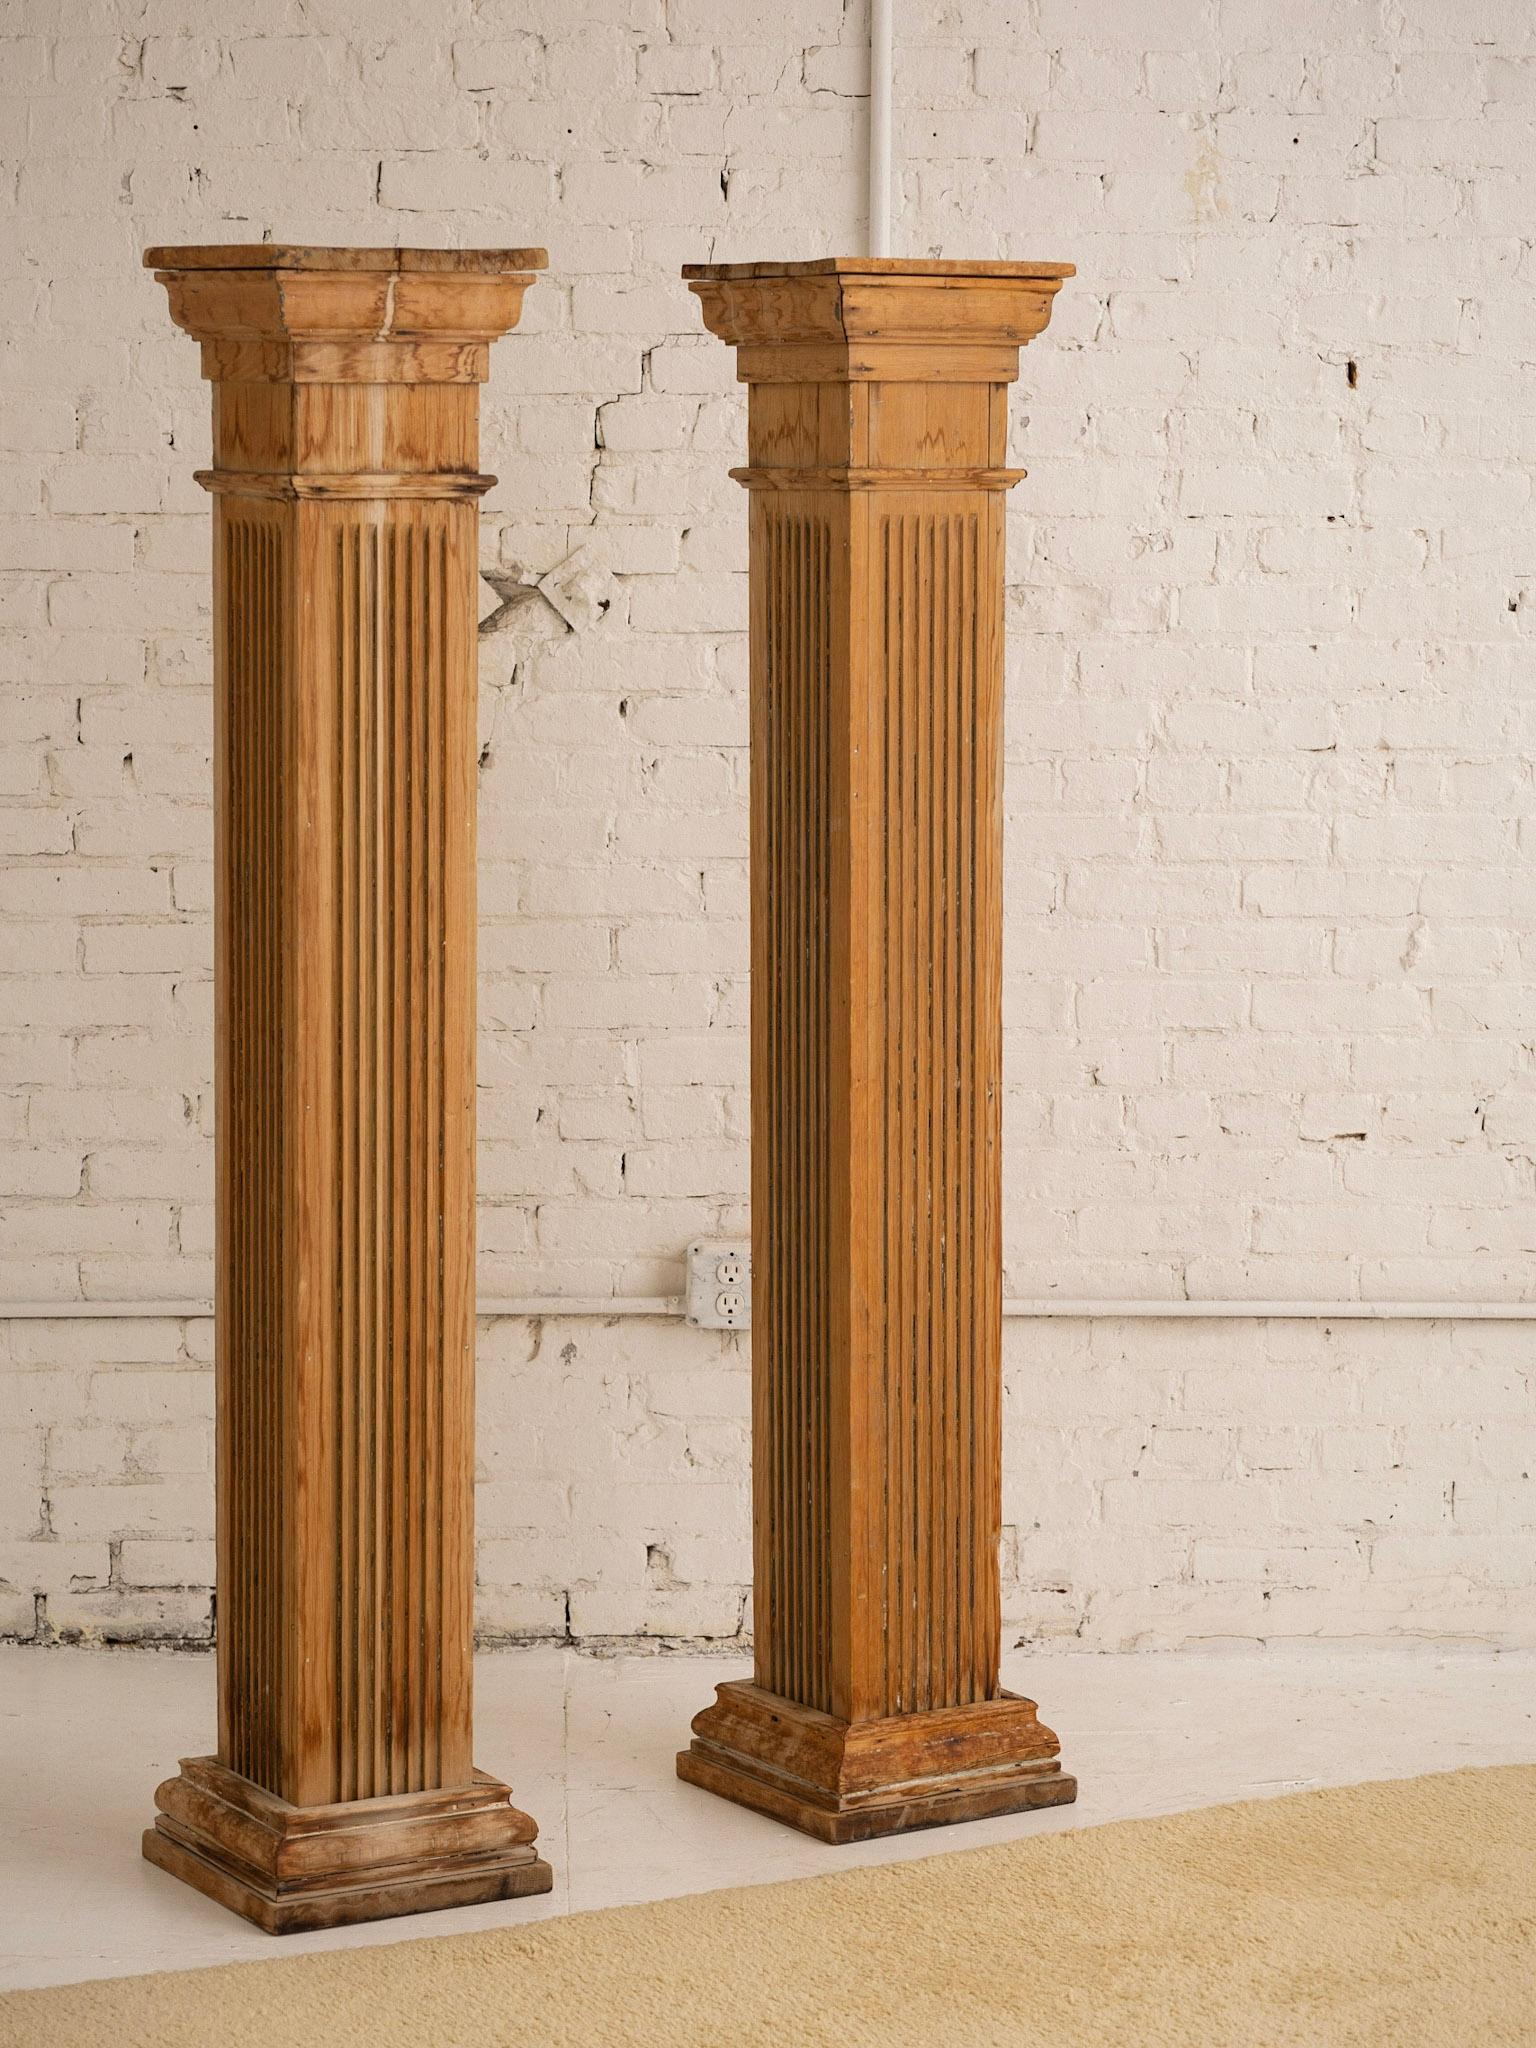 Ein Paar freistehender antiker, geborgener architektonischer Säulen. Griechisch-römischer dorischer Stil. Quadratische Silhouette. Die ursprüngliche Farbe wurde entfernt, um ein reichlich patiniertes Holz zu zeigen.